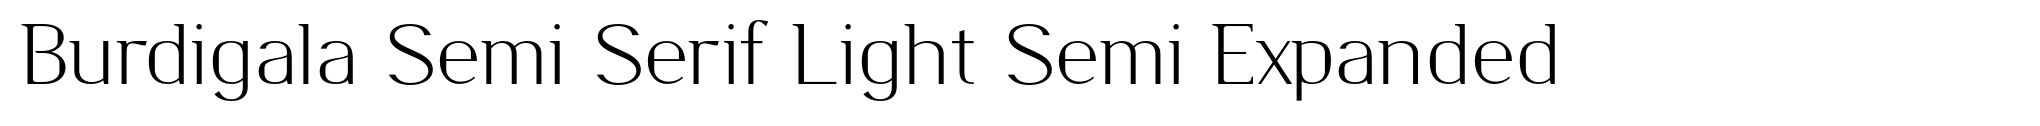 Burdigala Semi Serif Light Semi Expanded image